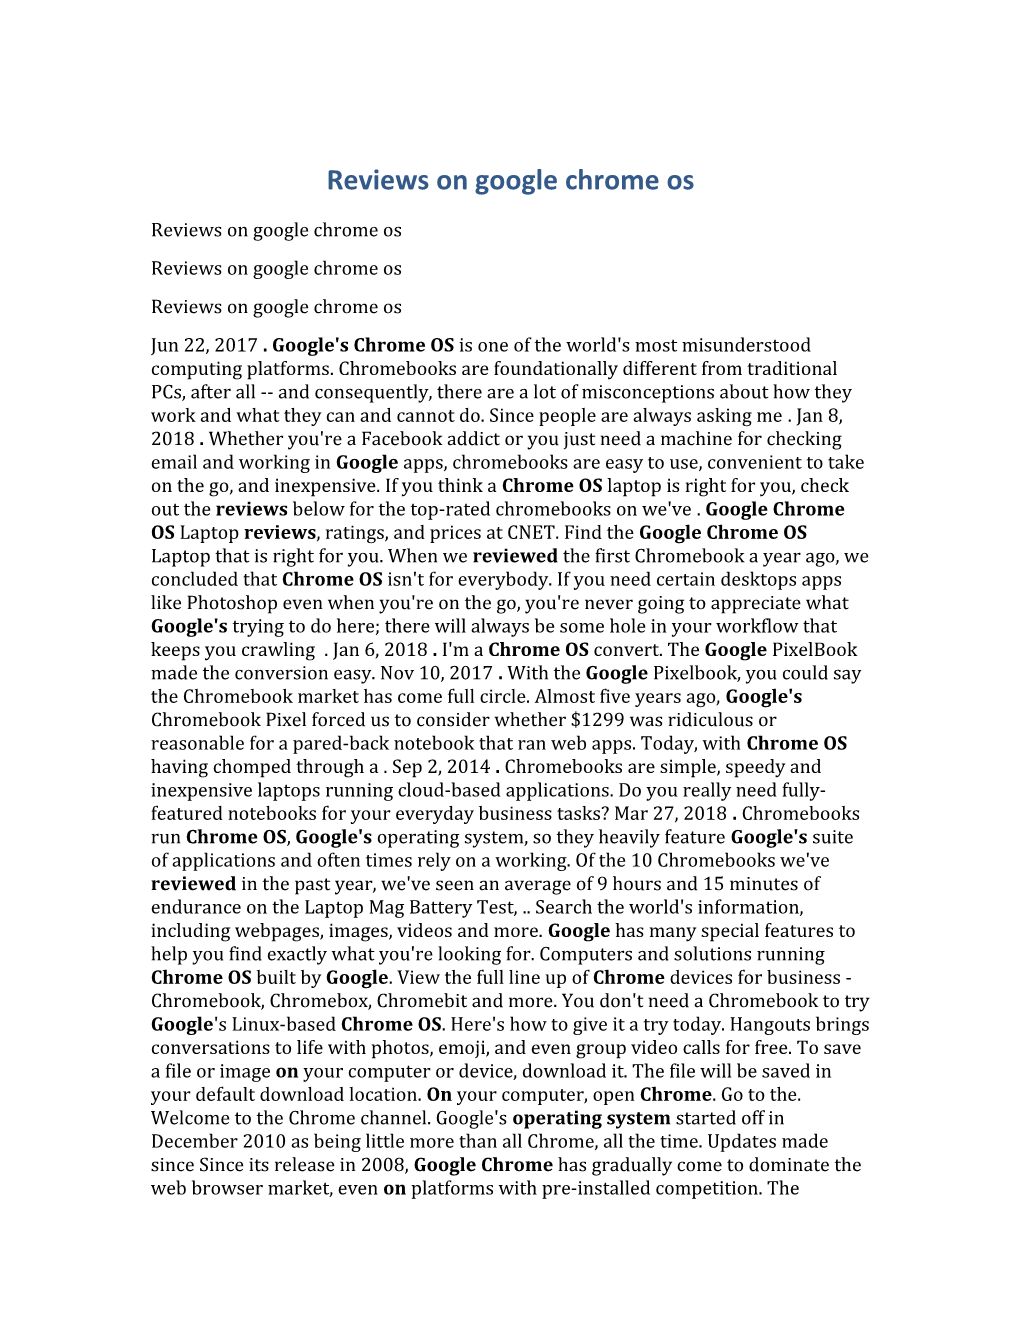 Reviews on Google Chrome Os